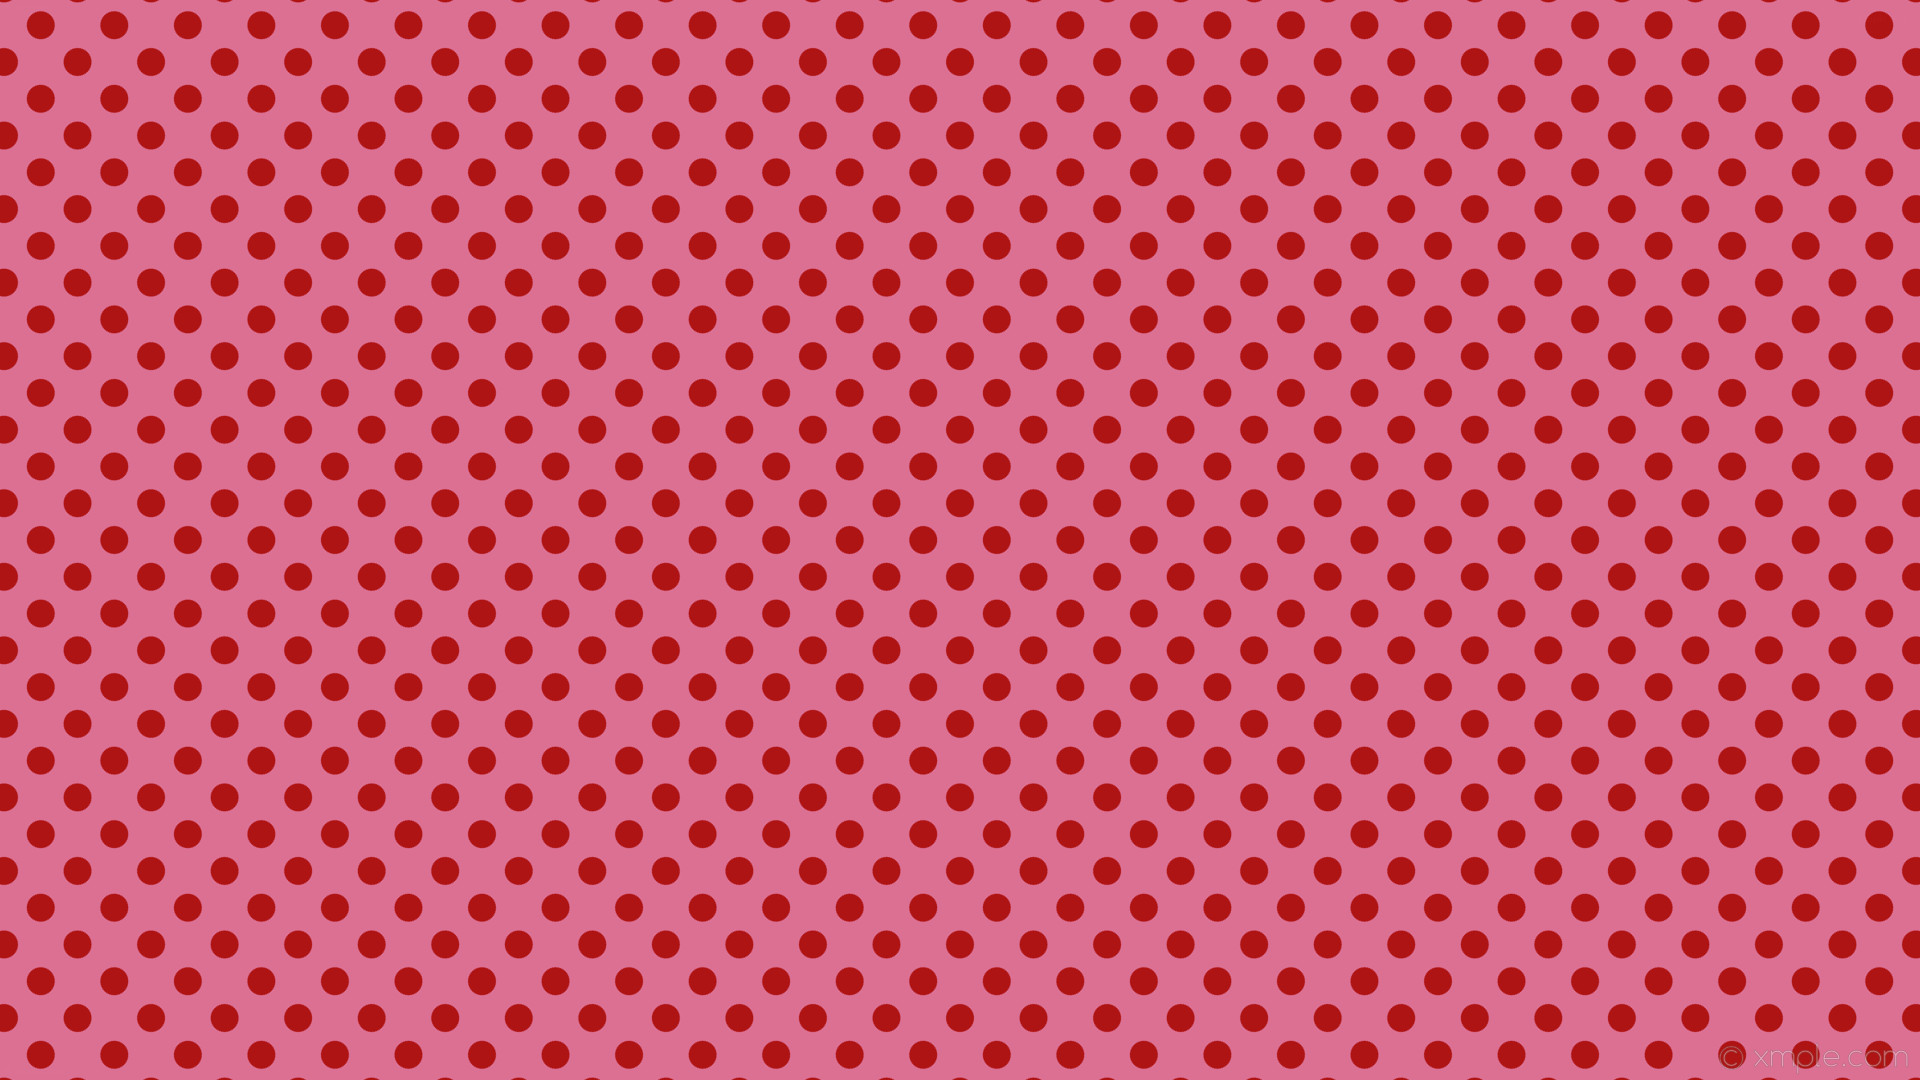 1920x1080 wallpaper polka red spots pink dots pale violet red #db7093 #af1414 225Â°  28px